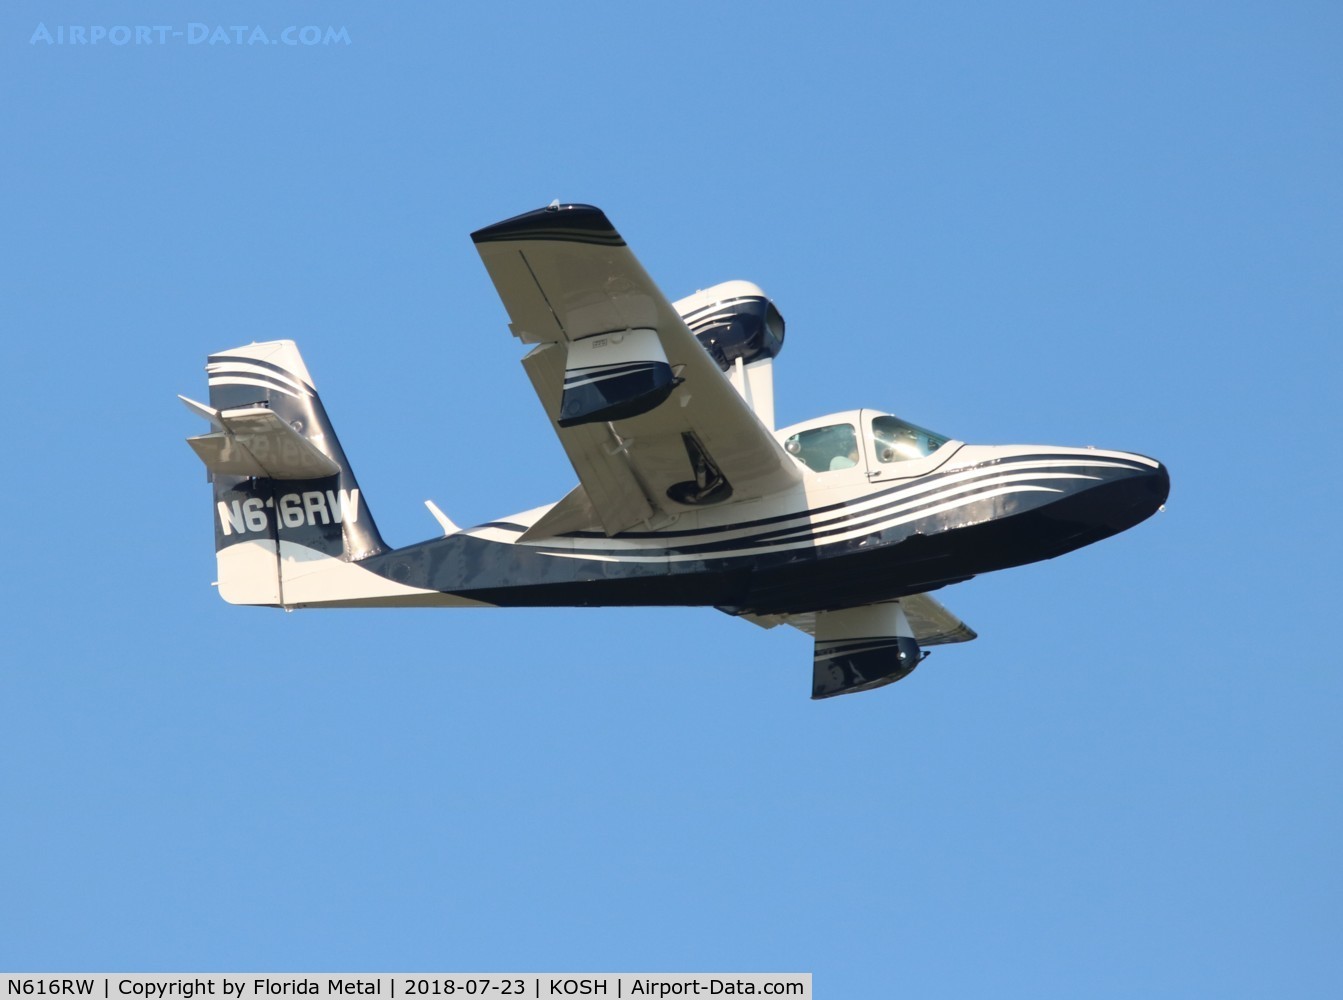 N616RW, 1978 Consolidated Aeronautics Inc. Lake LA-4-200 C/N 888, Lake LA-4-200